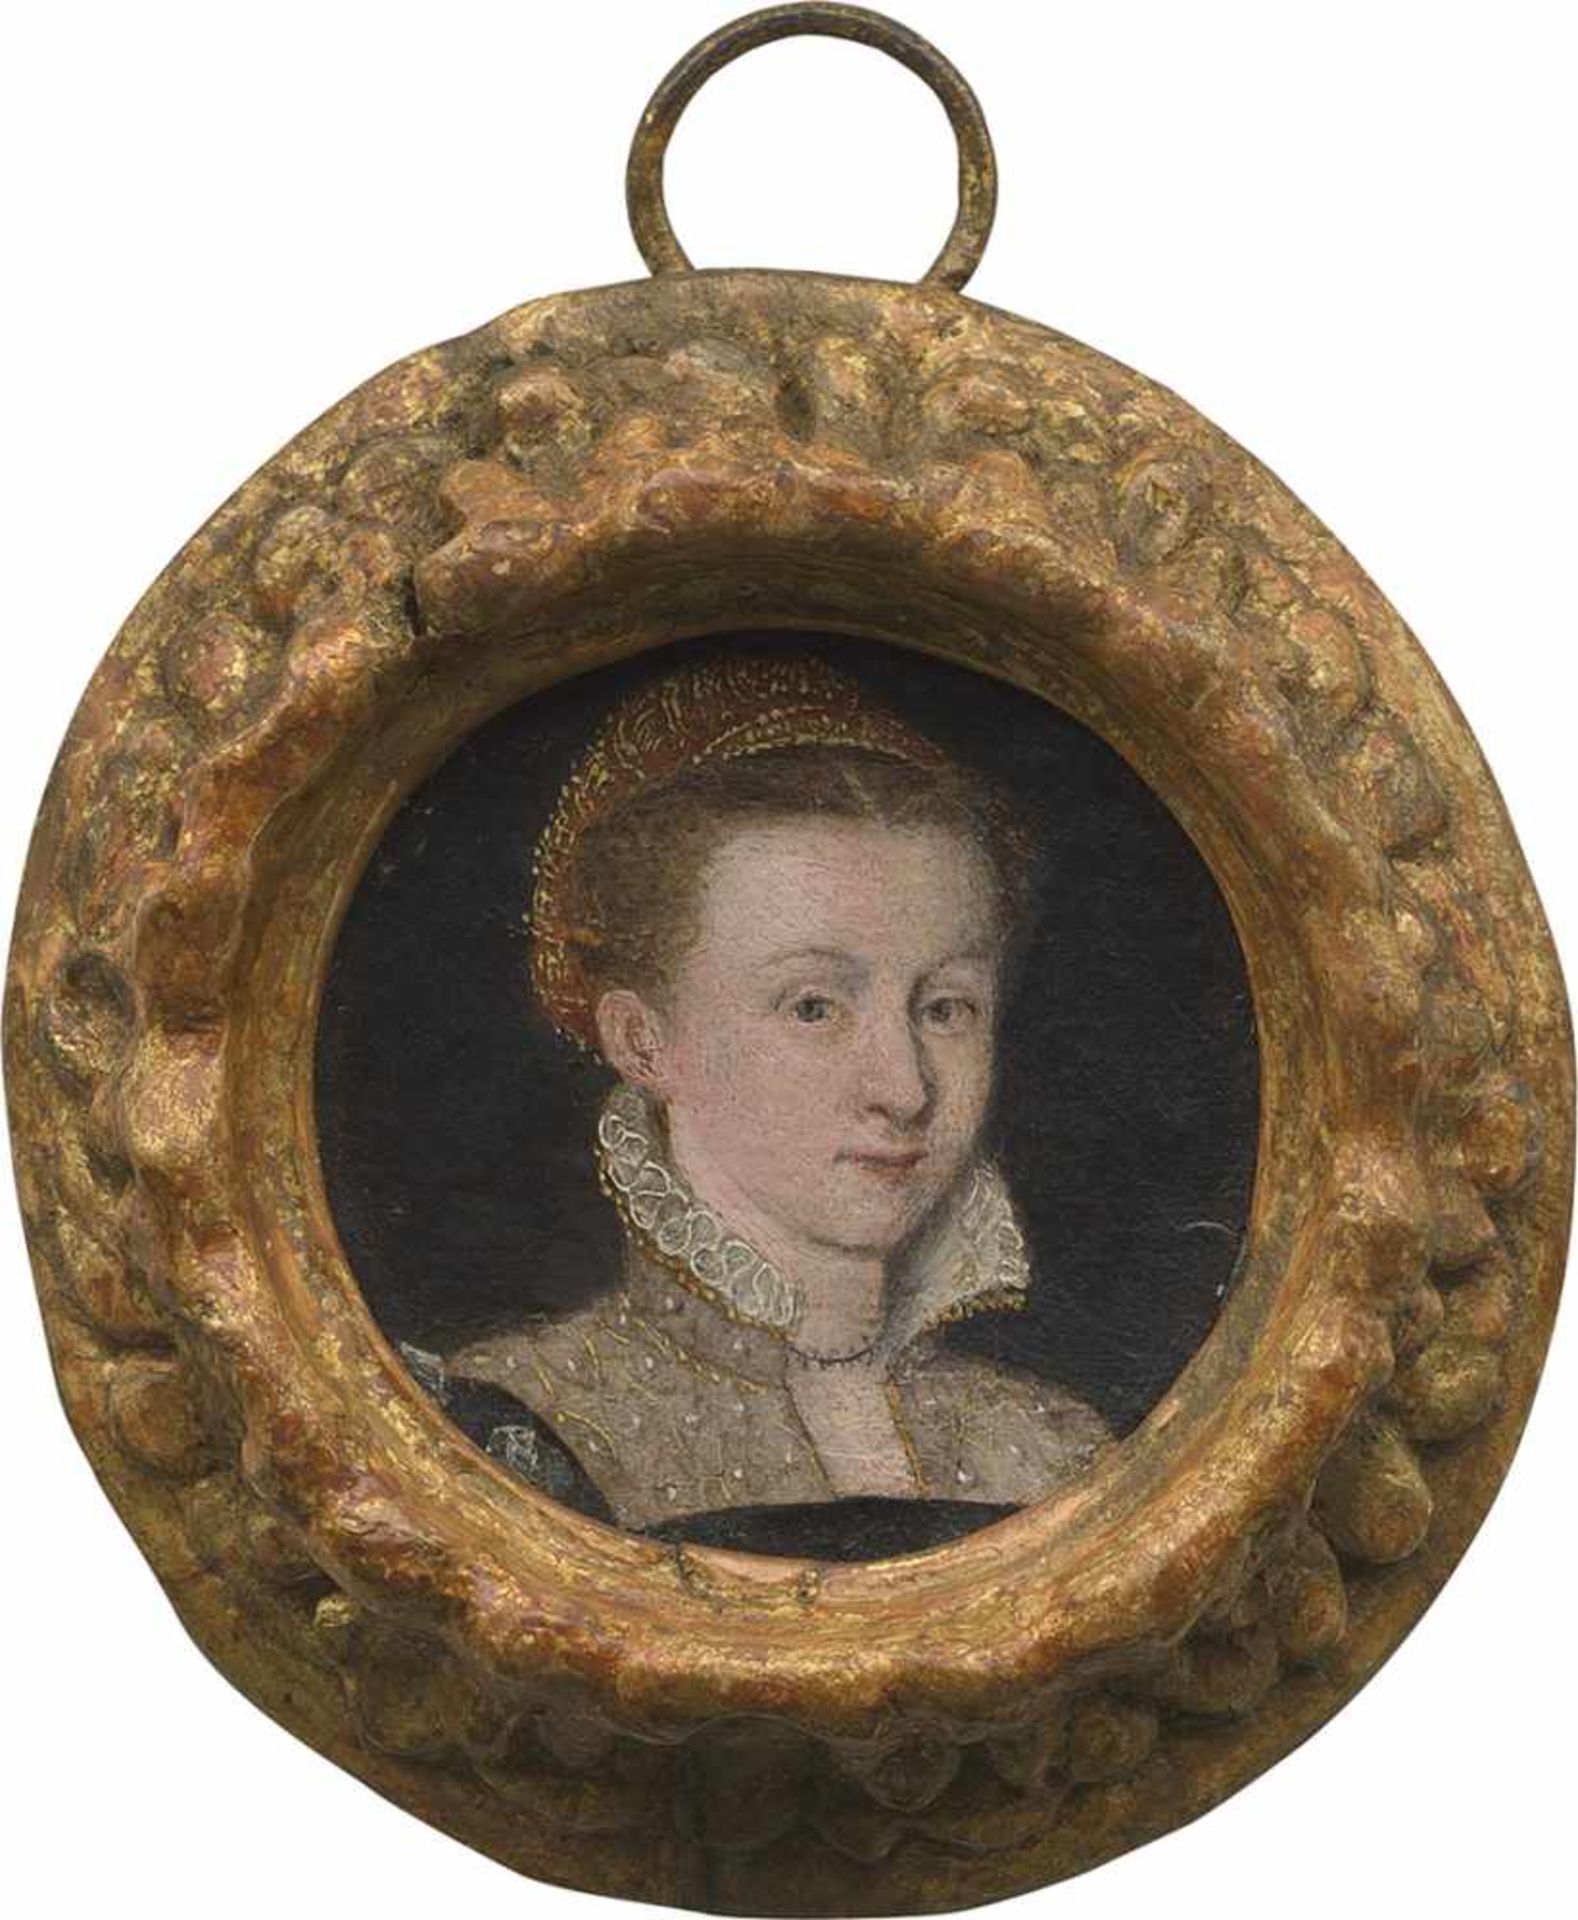 Venezianisch: um 1560. Bildnis einer jungen Frau in schwarzem Kleid mit geschlitzten Ärmeln, Gaze